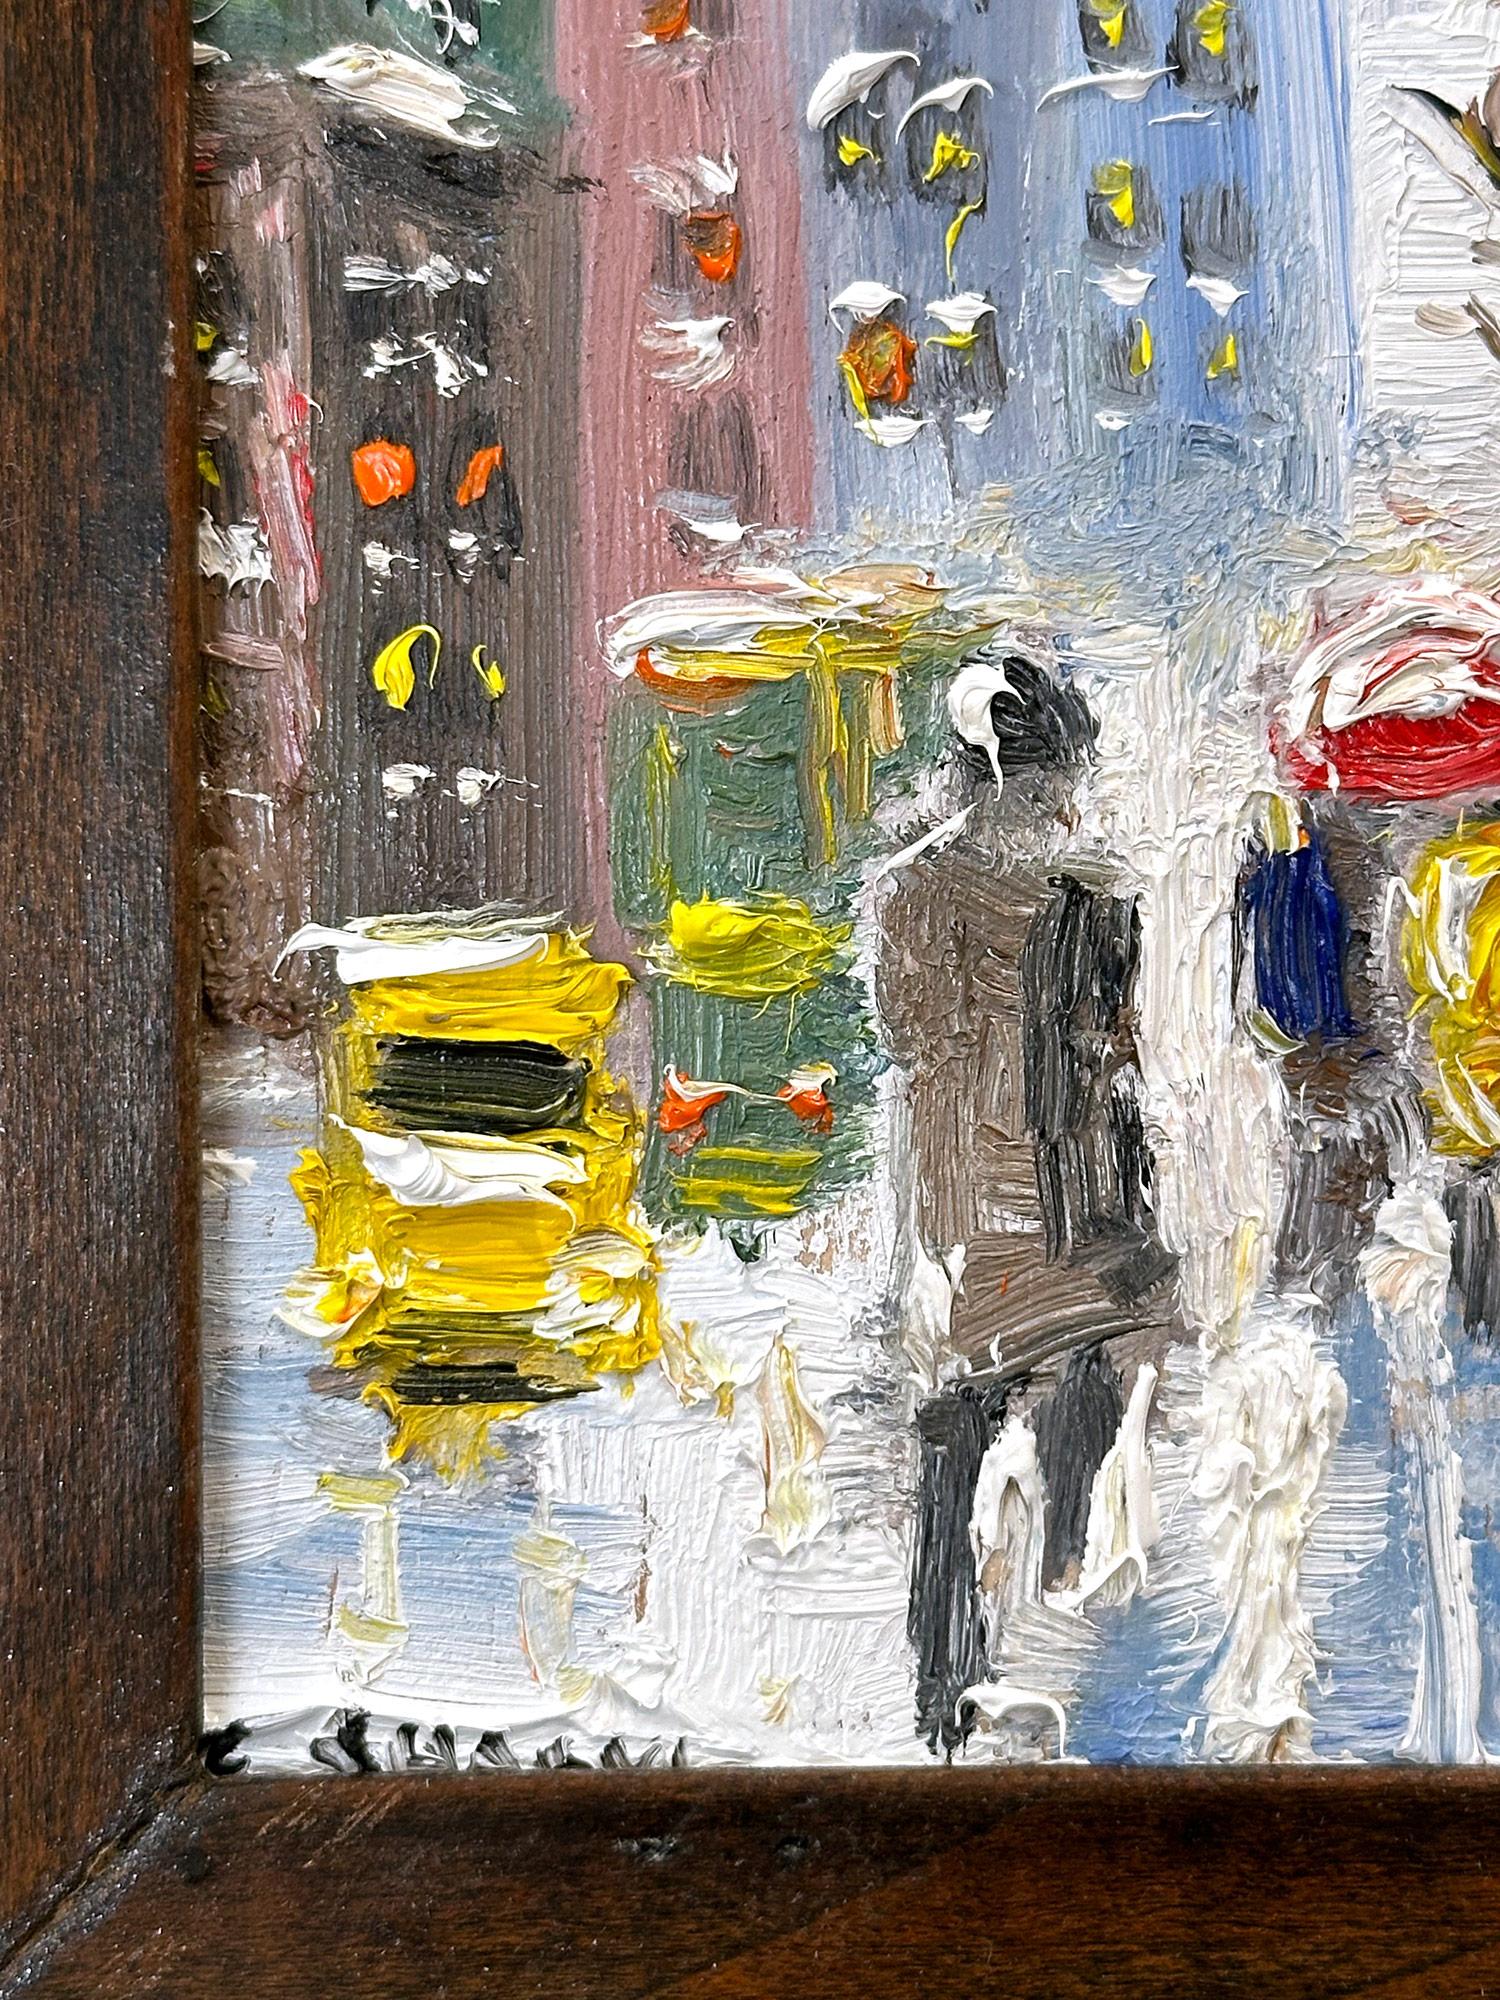 Une charmante représentation de la neige dans le Downtown New York City avec des personnages qui marchent et des taxis au loin. Une scène de rue impressionniste et confortable avec des couleurs de cobalts, de rose clair, de blancs et de terre de